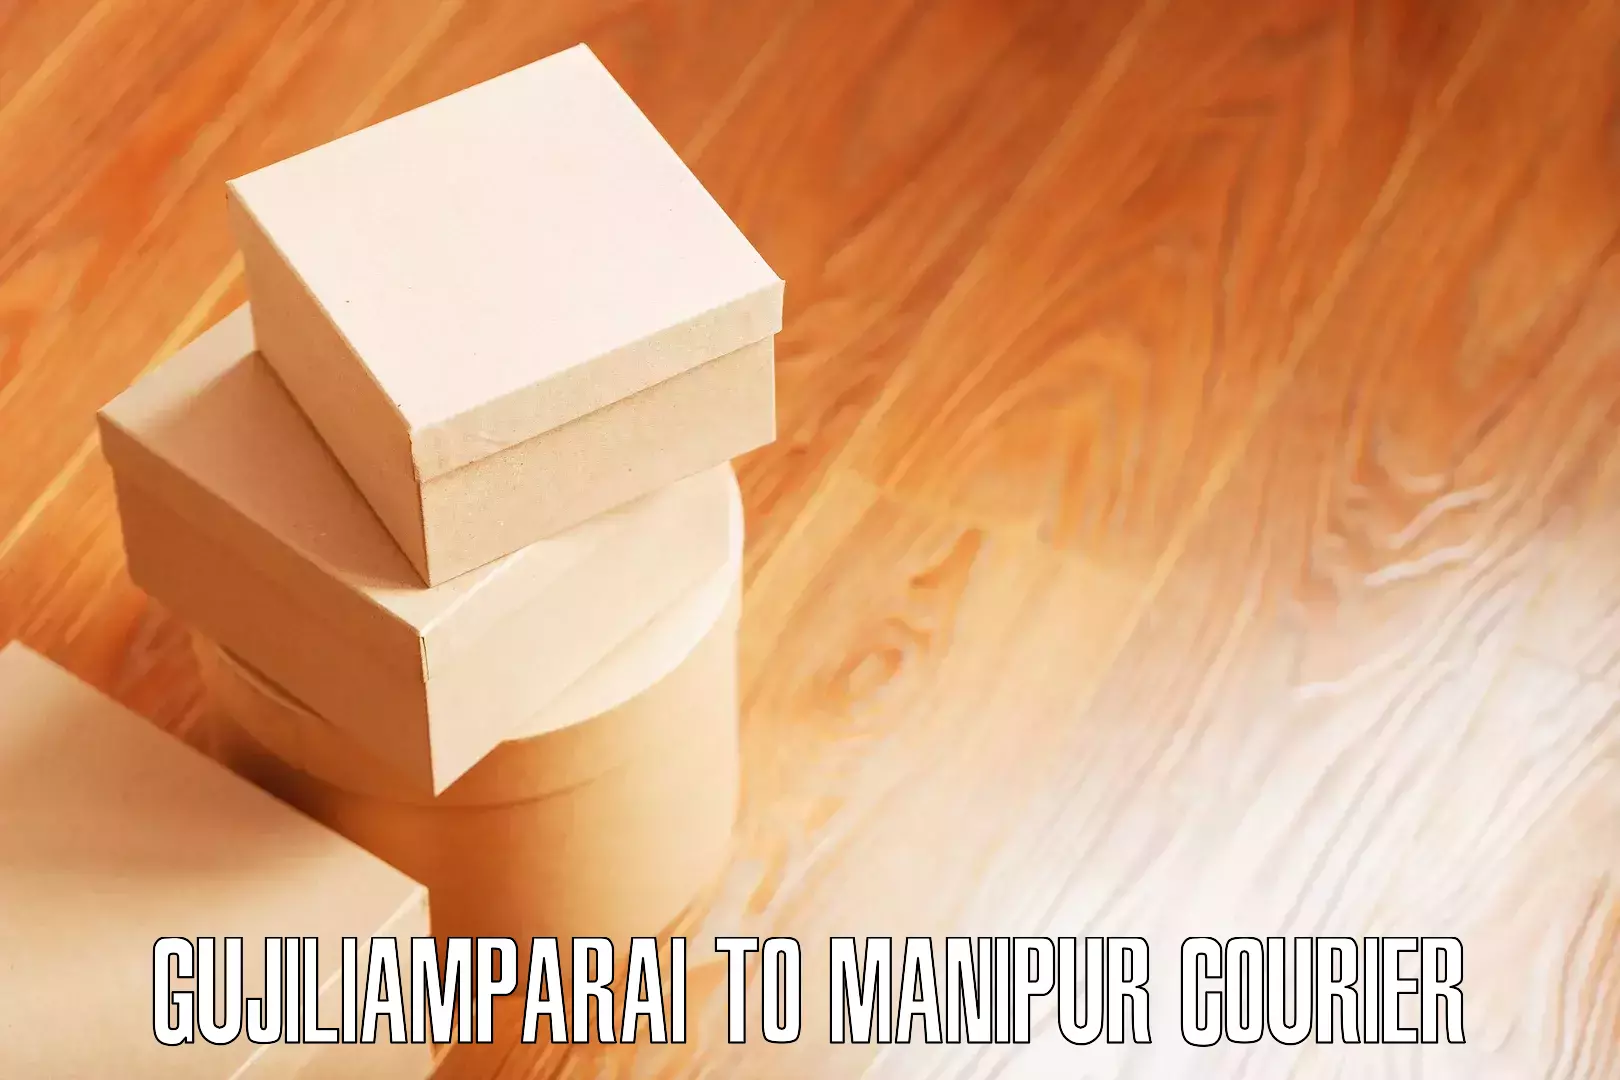 Home goods moving company Gujiliamparai to Thoubal